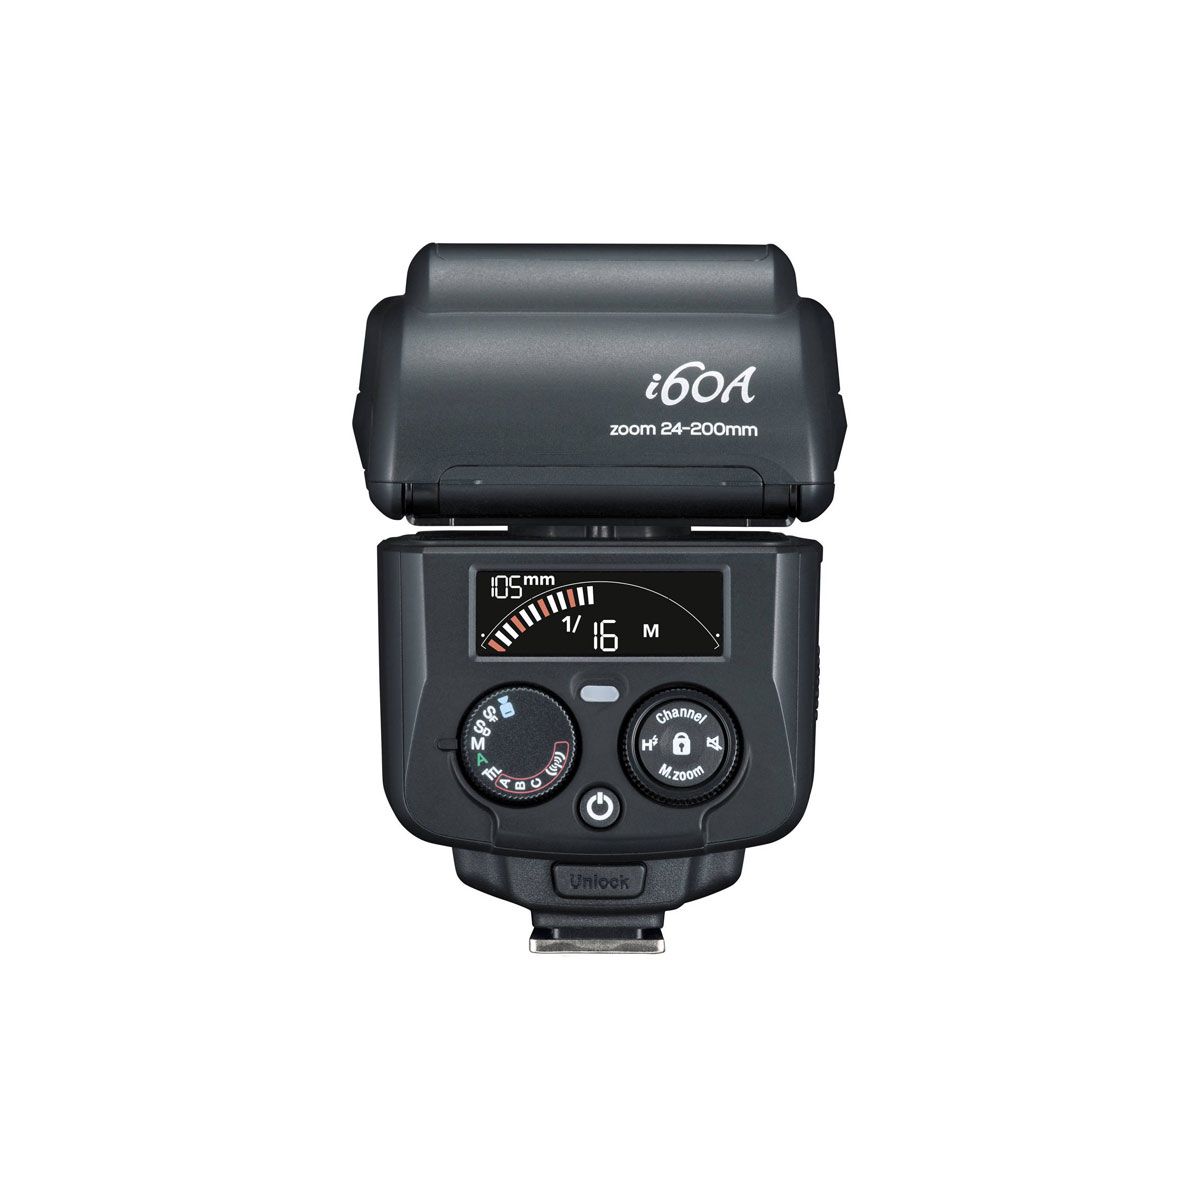  Đèn Flash máy ảnh Nissin i60A for Canon - Chính hãng 